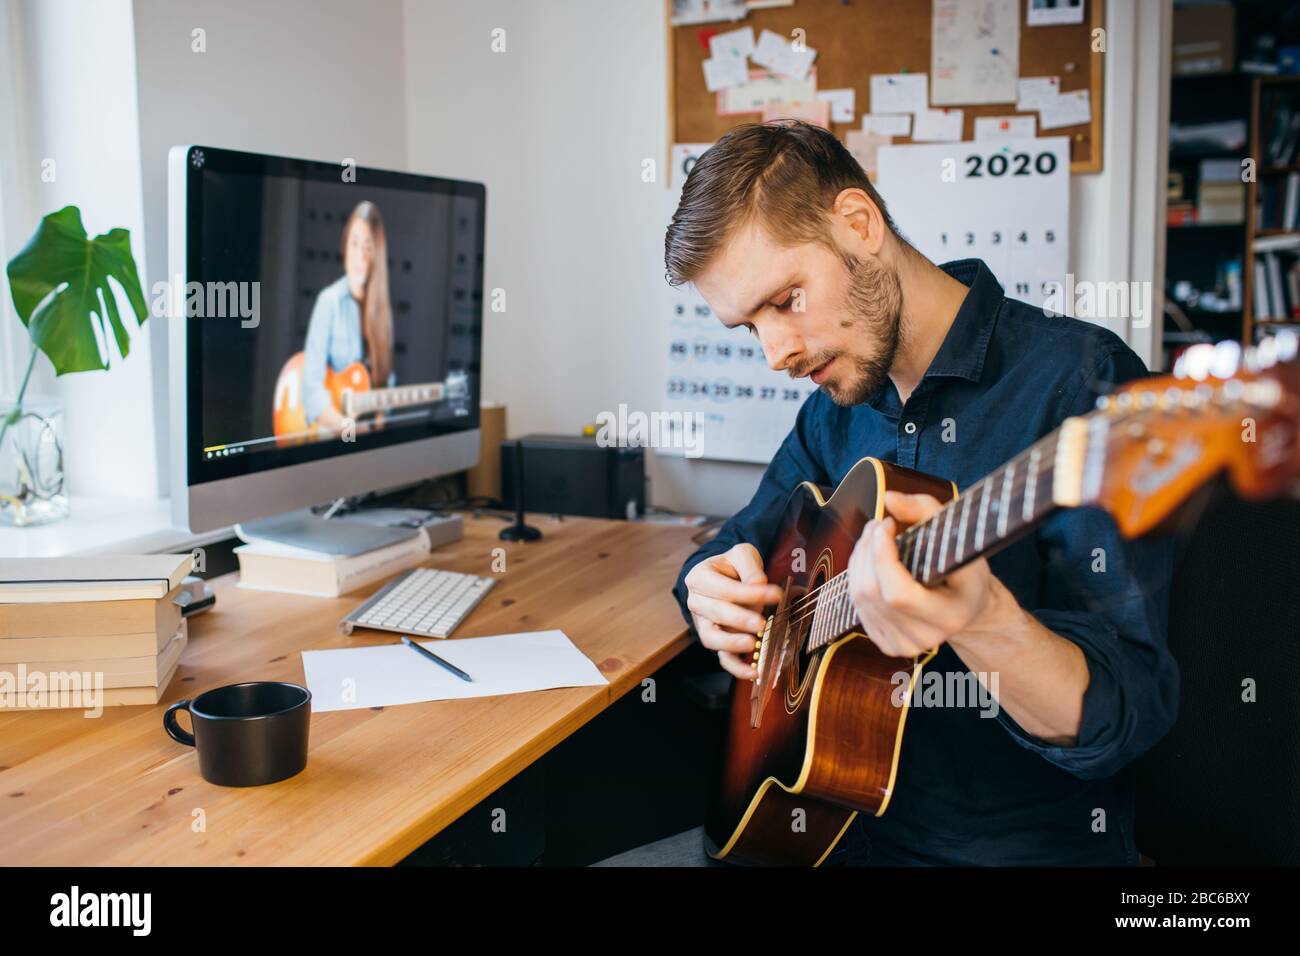 Hombre aprendiendo a tocar la guitarra desde el tutorial en línea. Hombre tocando guitarra acústica. Concepto de estancia en casa durante la pandemia del coronavirus. Foto de stock